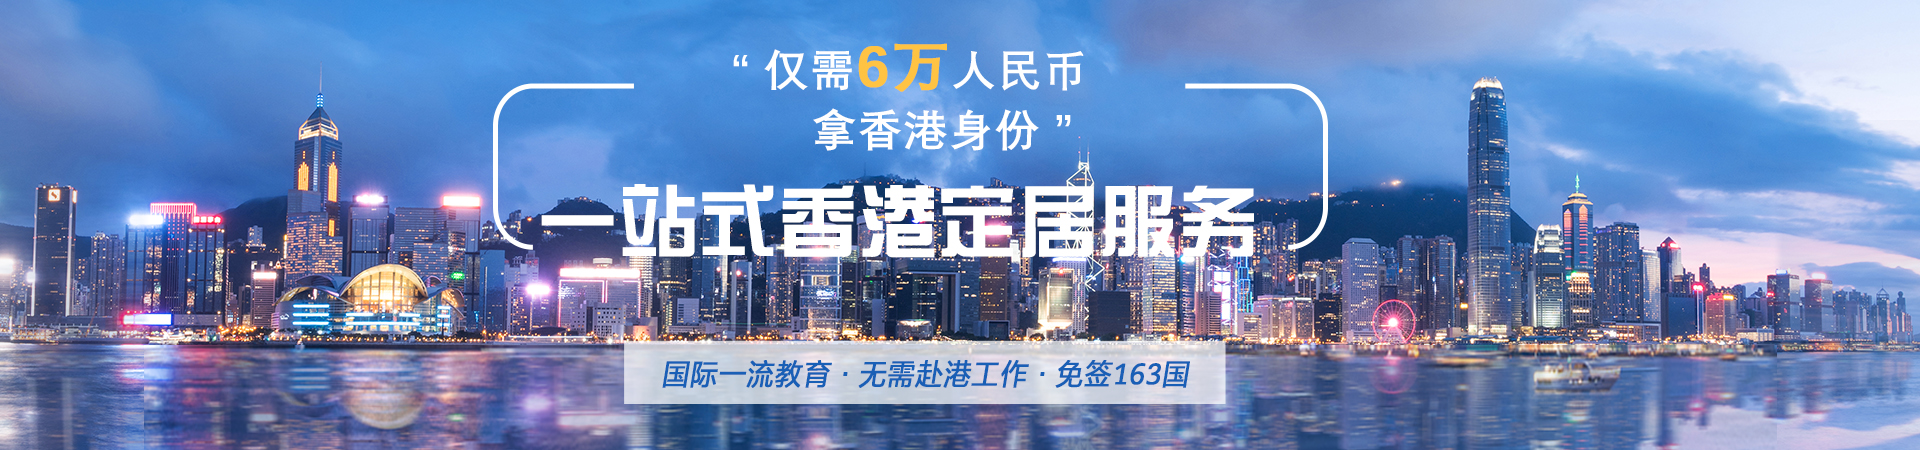 “仅需6万人民币拿香港身份” 一站式香港定居服务 等